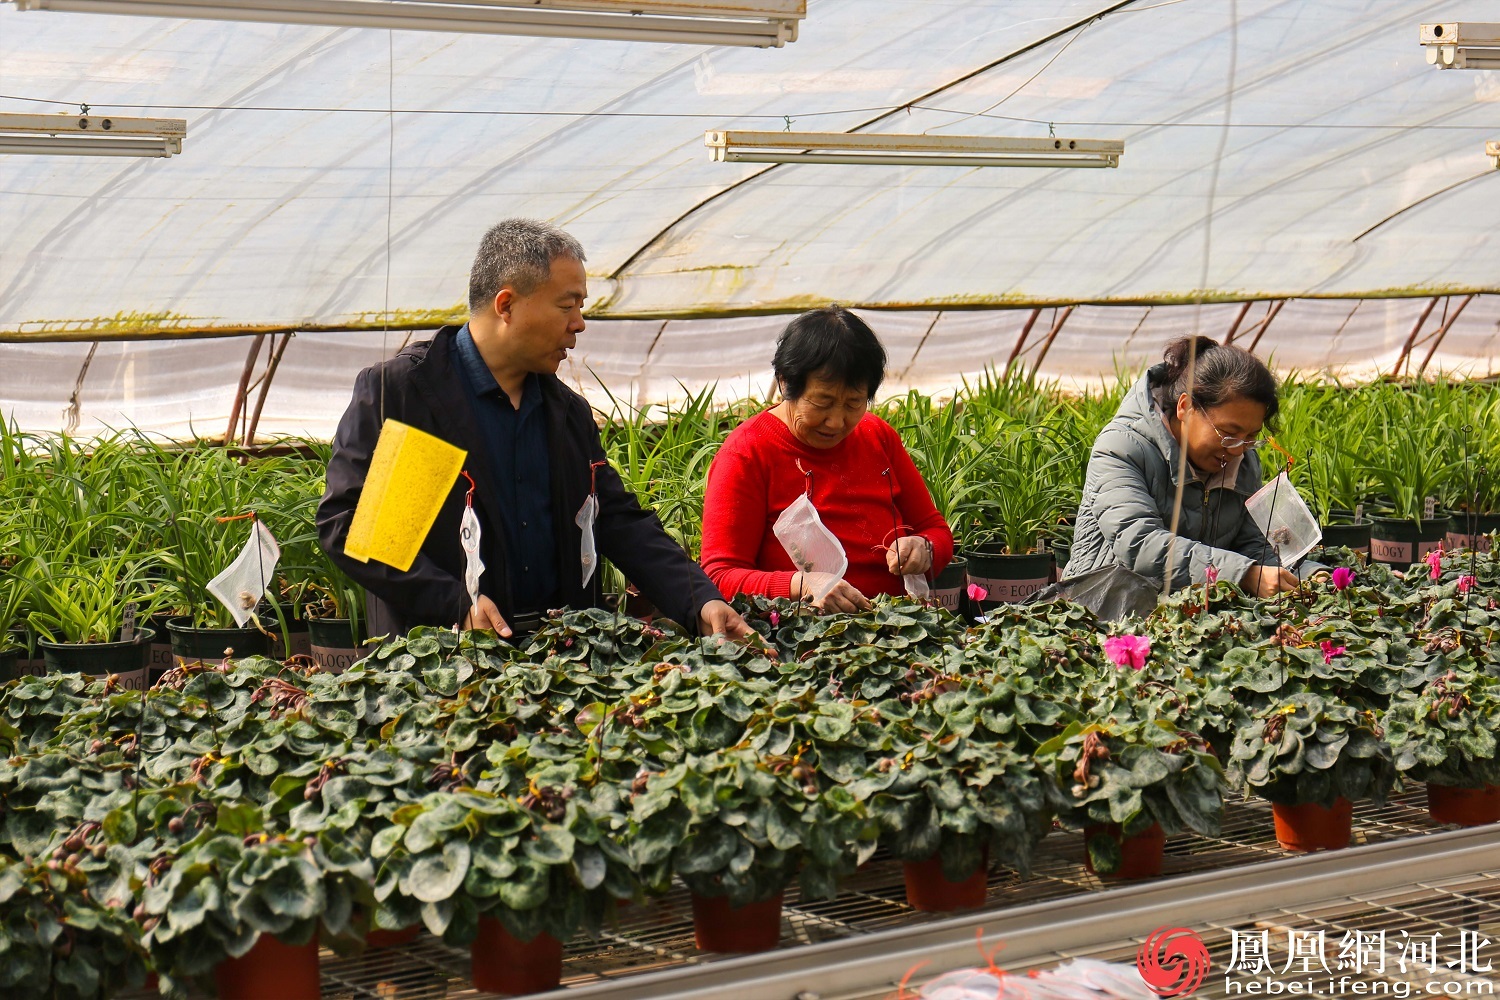 边光亚与团队其他成员一起观察记录种子培育情况